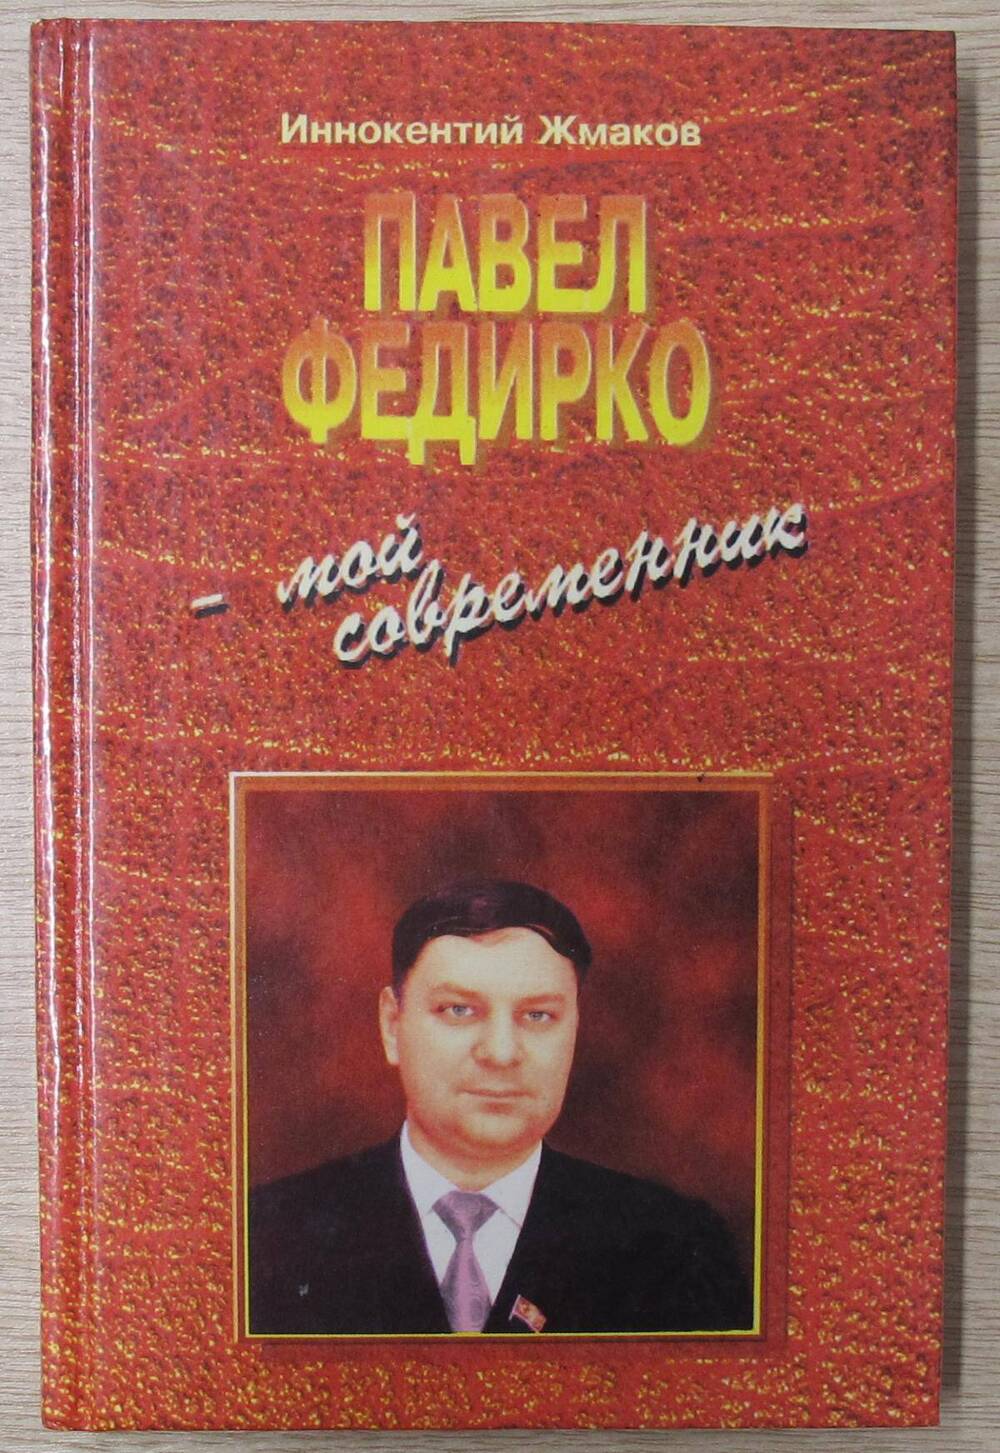 Книга Павел Федирко - мой современник.